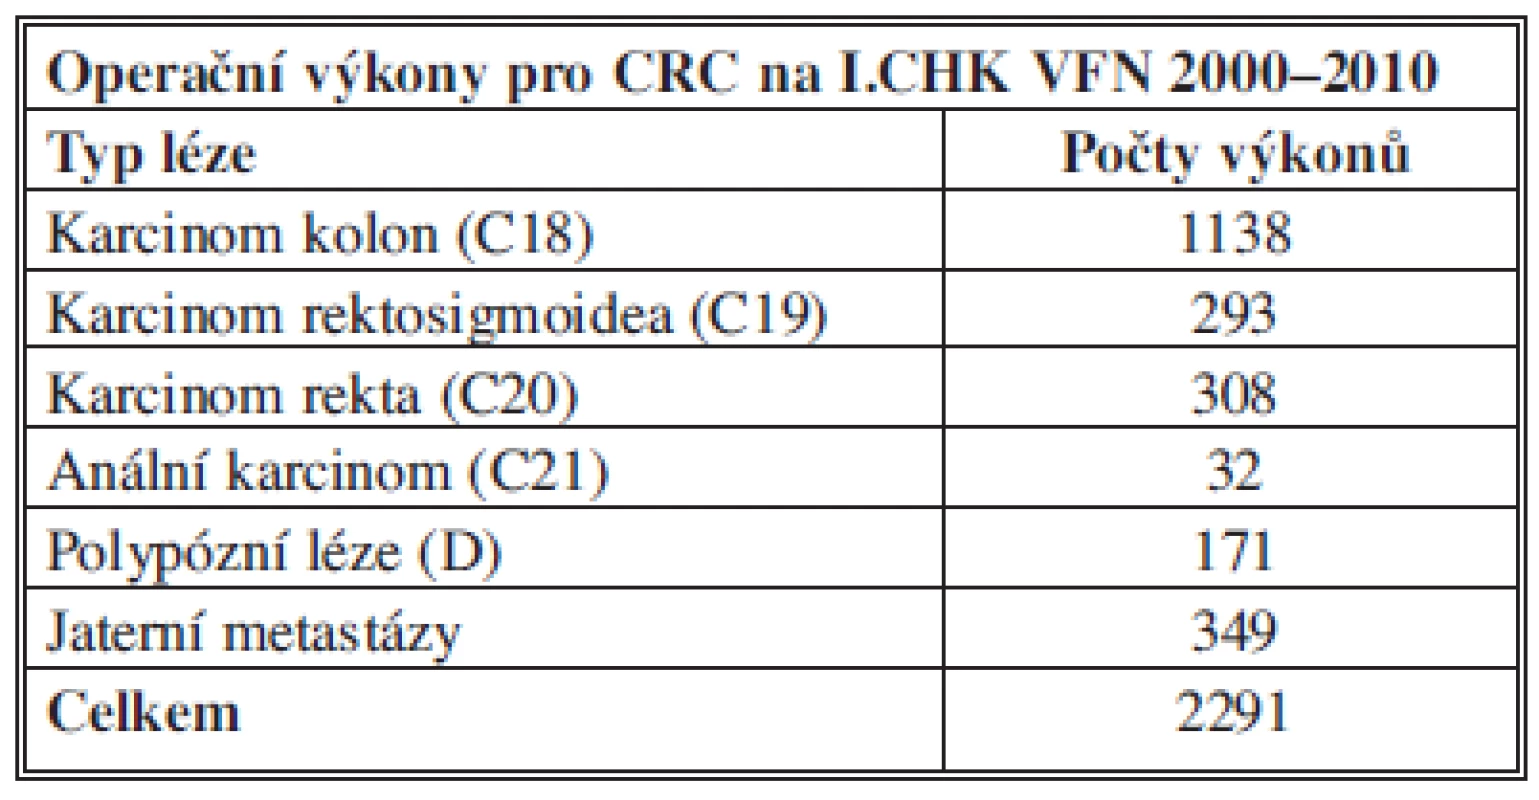 Počty provedených výkonů na I. chirurgické klinice VFN Praha v letech 2000–2010